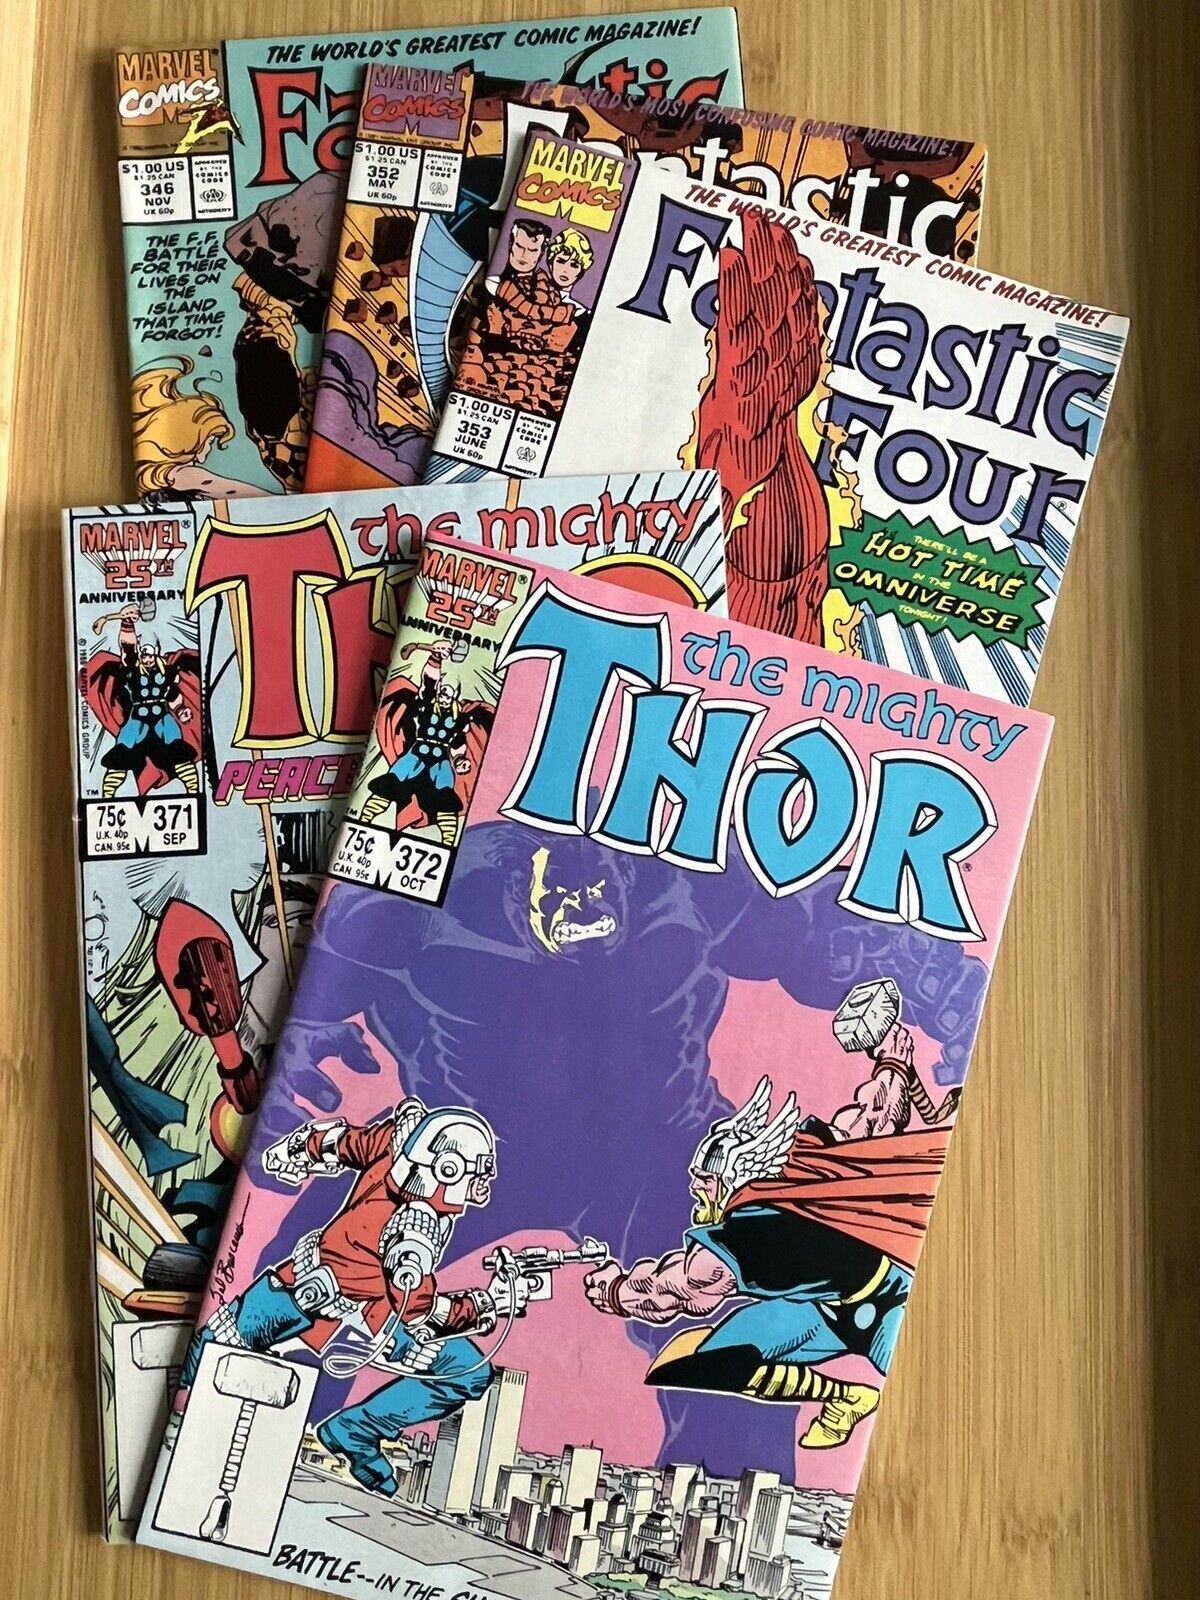 Thor and Fantastic Four - Loki/TVA comic book bundle